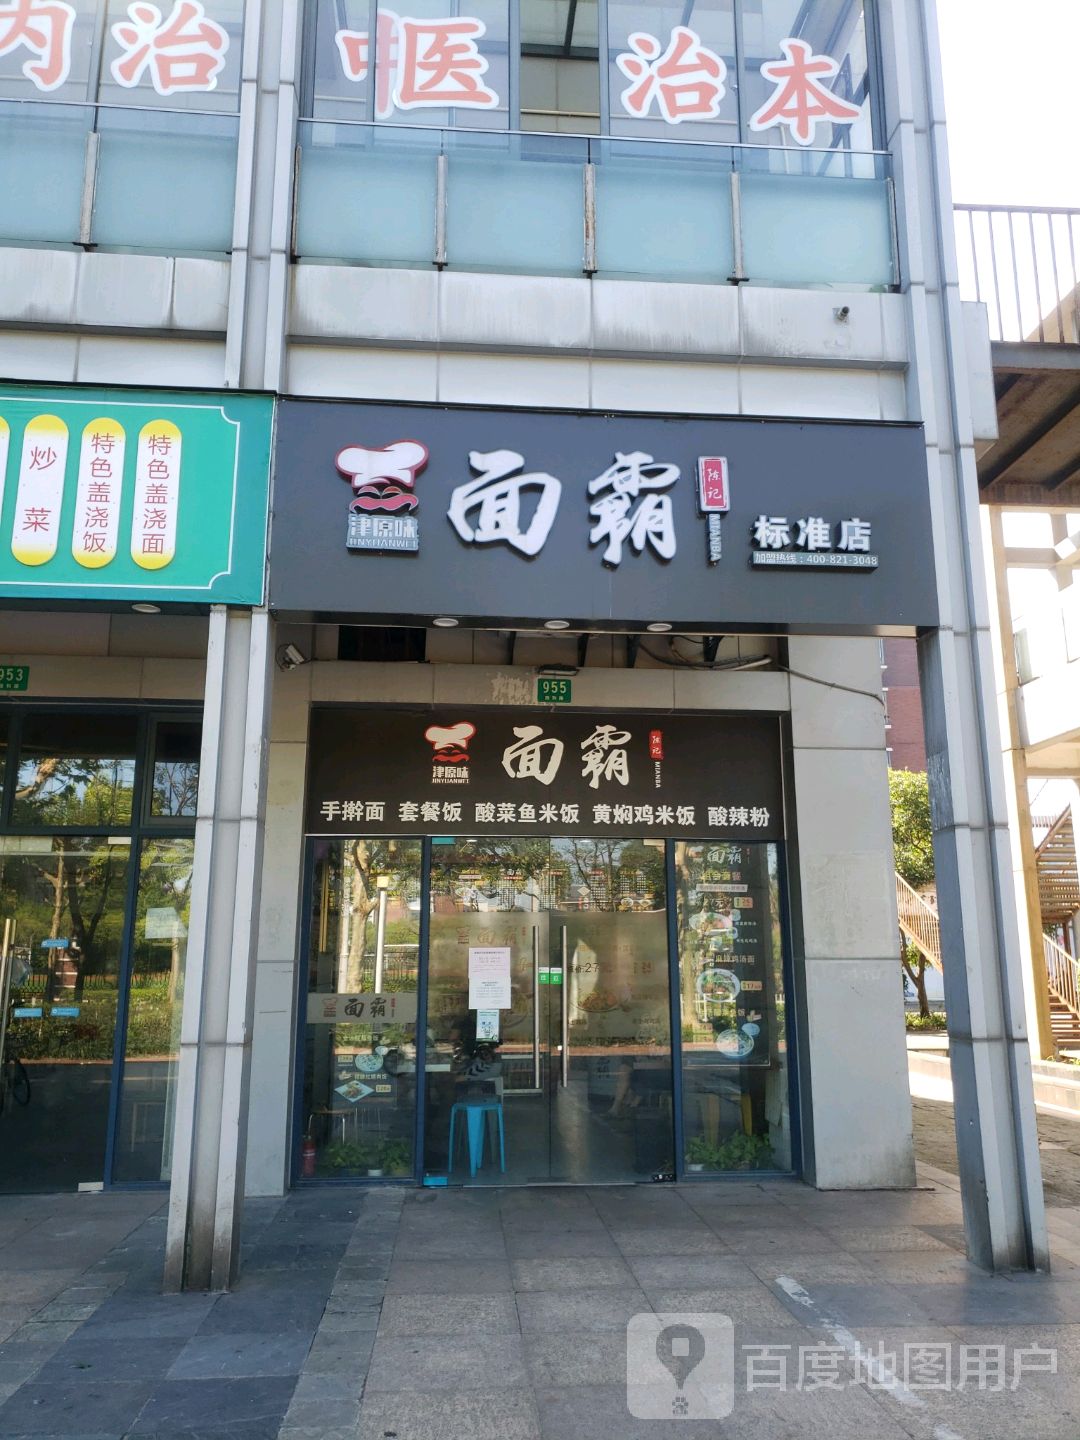 标签:中式快餐快餐厅美食餐馆面馆沙县小吃黄焖鸡共多少人浏览